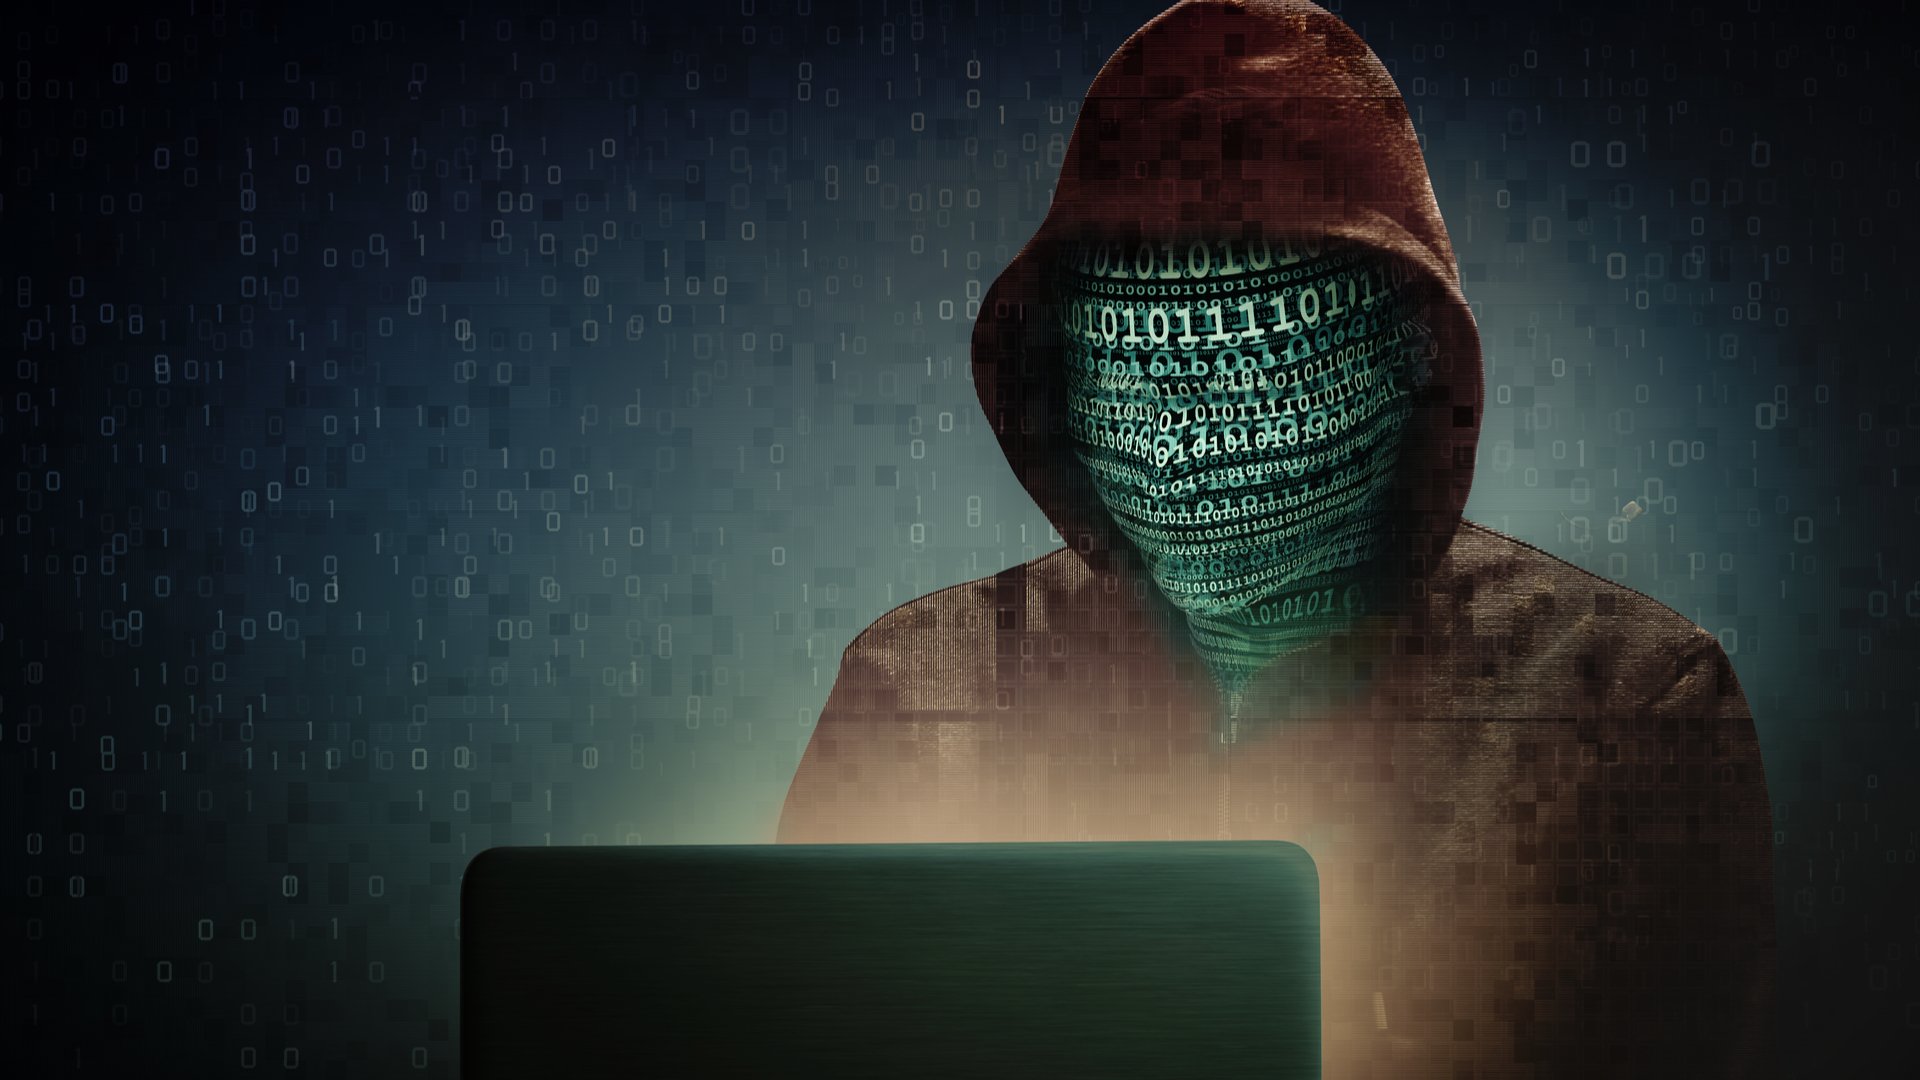 darknet hacker даркнет